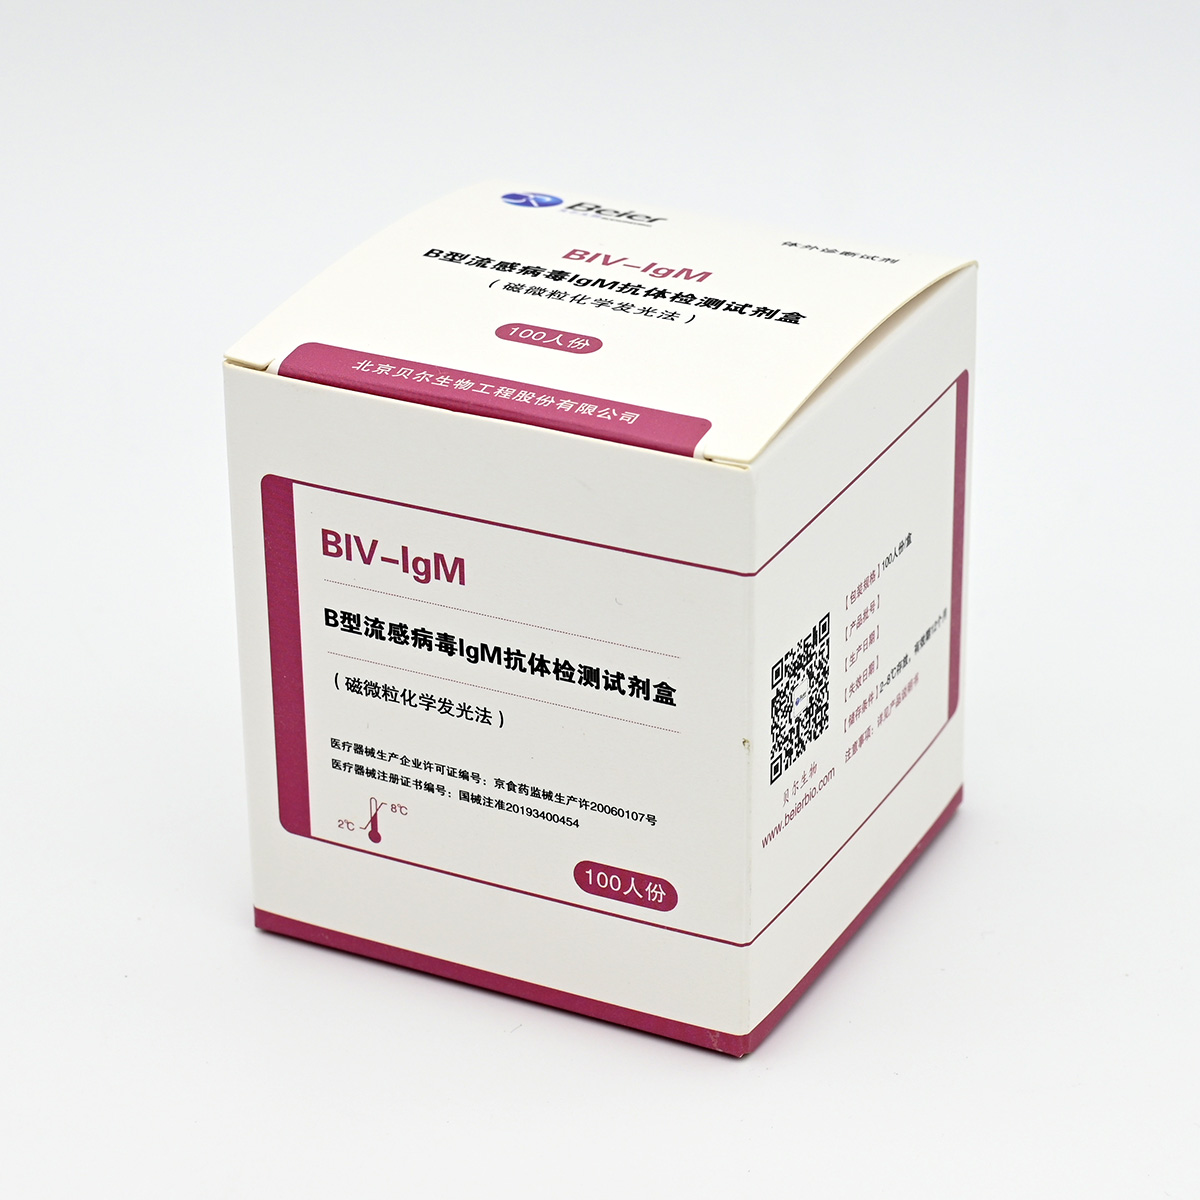 【贝尔】B型流感病毒IgM抗体检测试剂盒(磁微粒化学发光法)